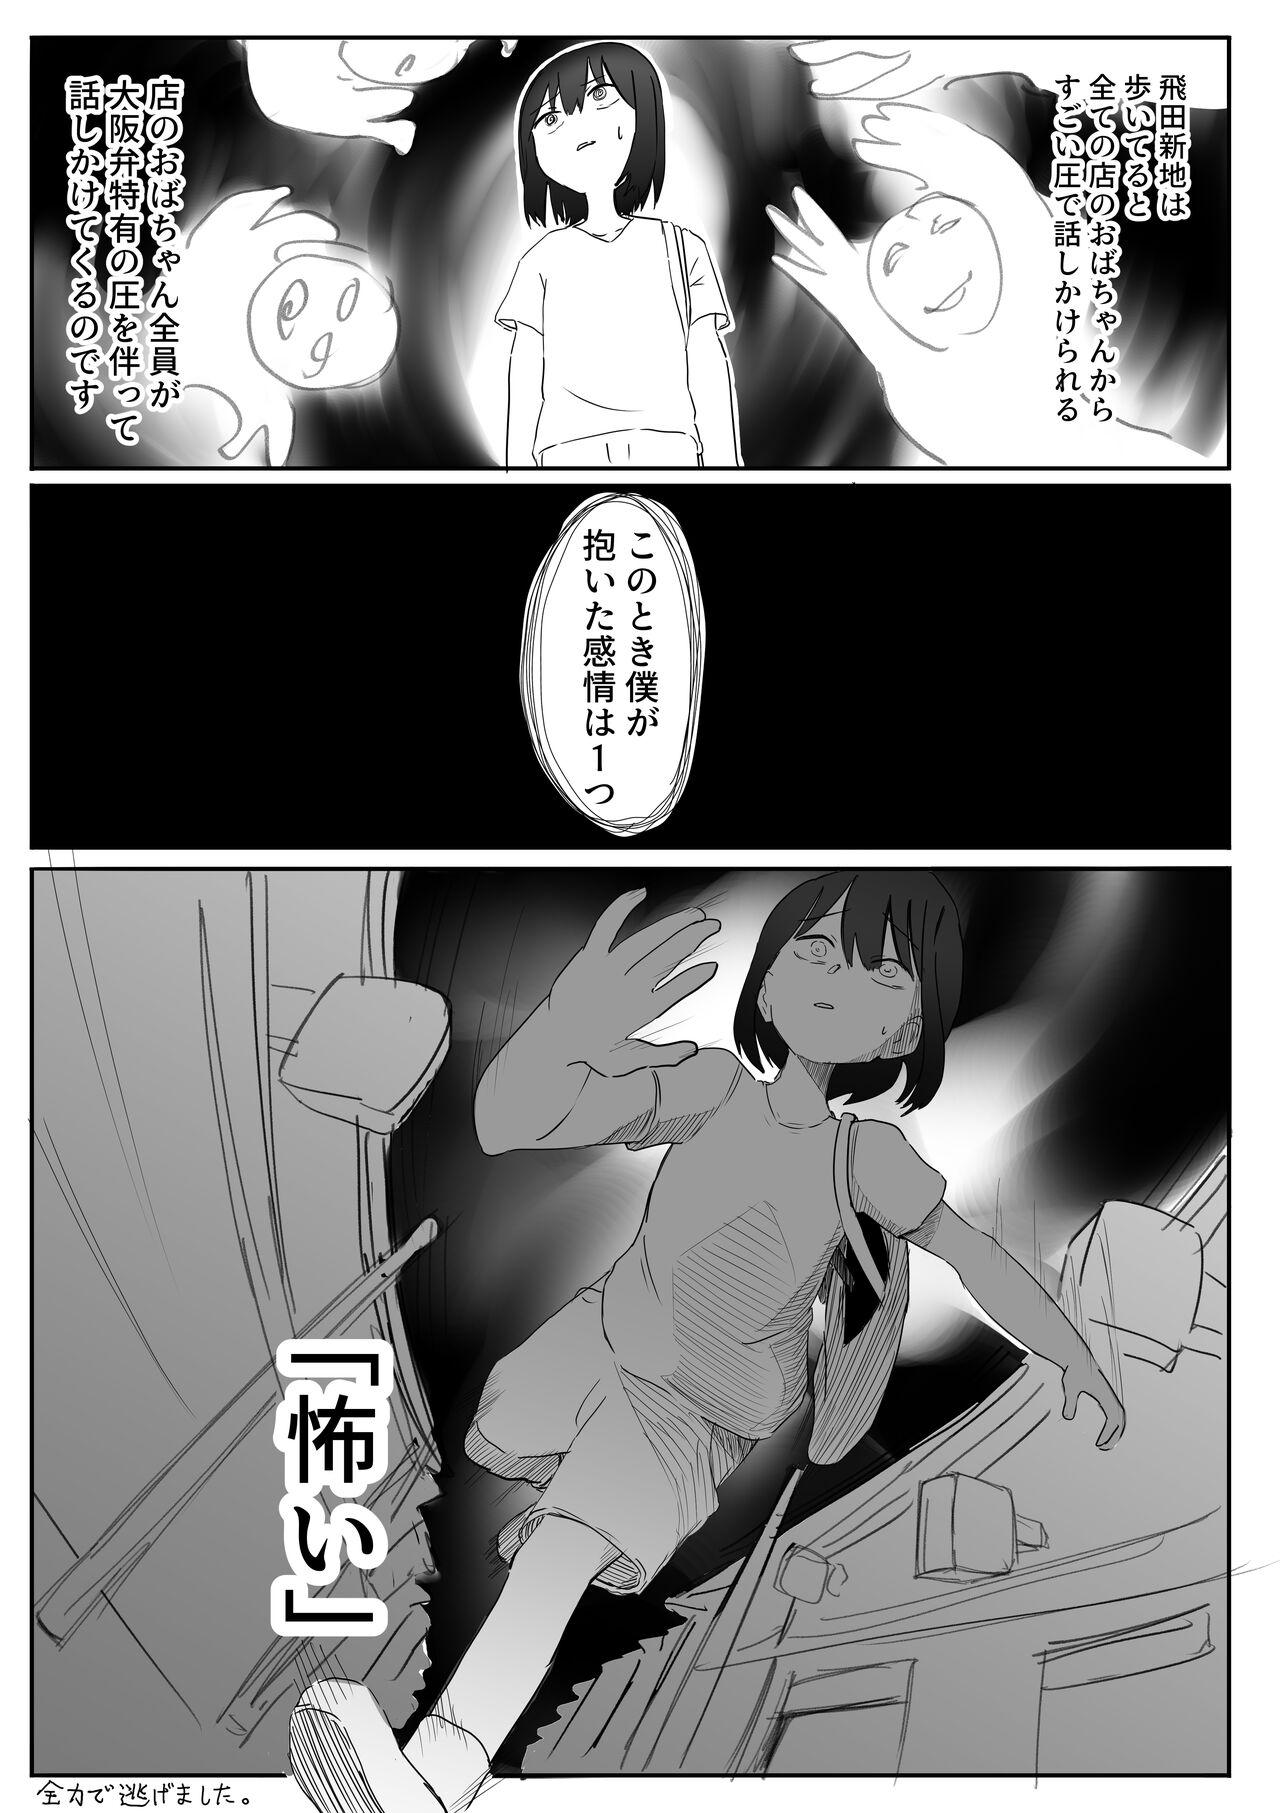 【風俗レポ漫画】飛田新地で童貞を捨てた話 3